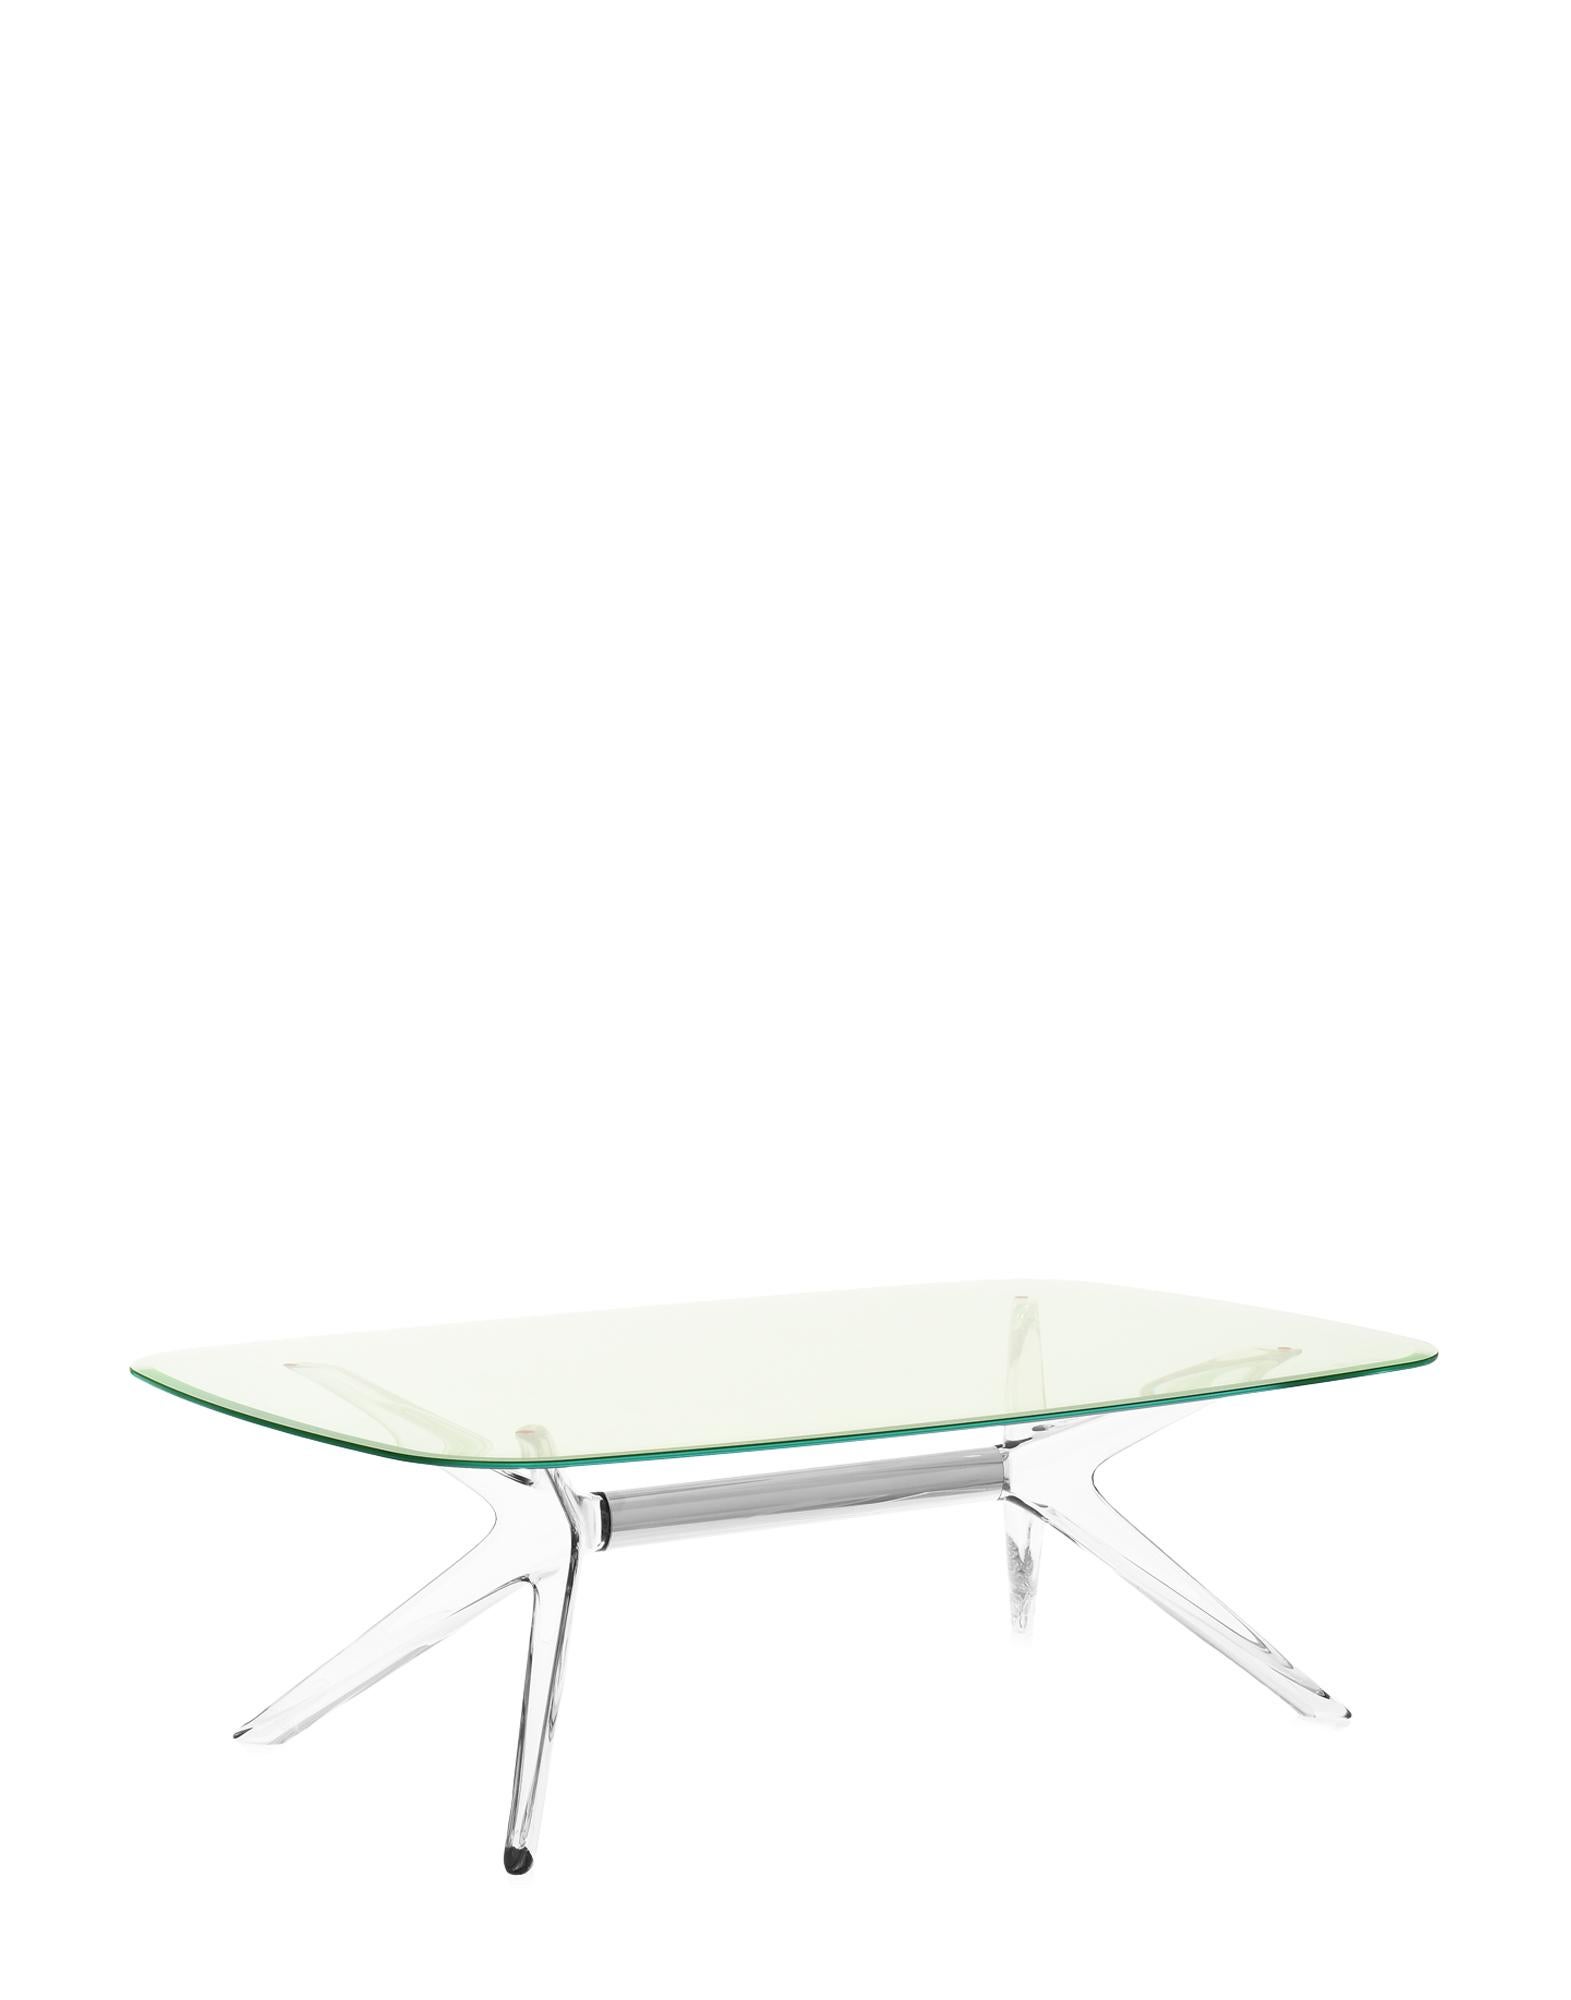 Kartell lifestyle agrémente le salon avec Blast de Philippe Starck, une table basse rectangulaire aux angles arrondis et aux bases et plateaux transparents. Le design est un développement de la table Sir Gio. Le noyau central de la base est